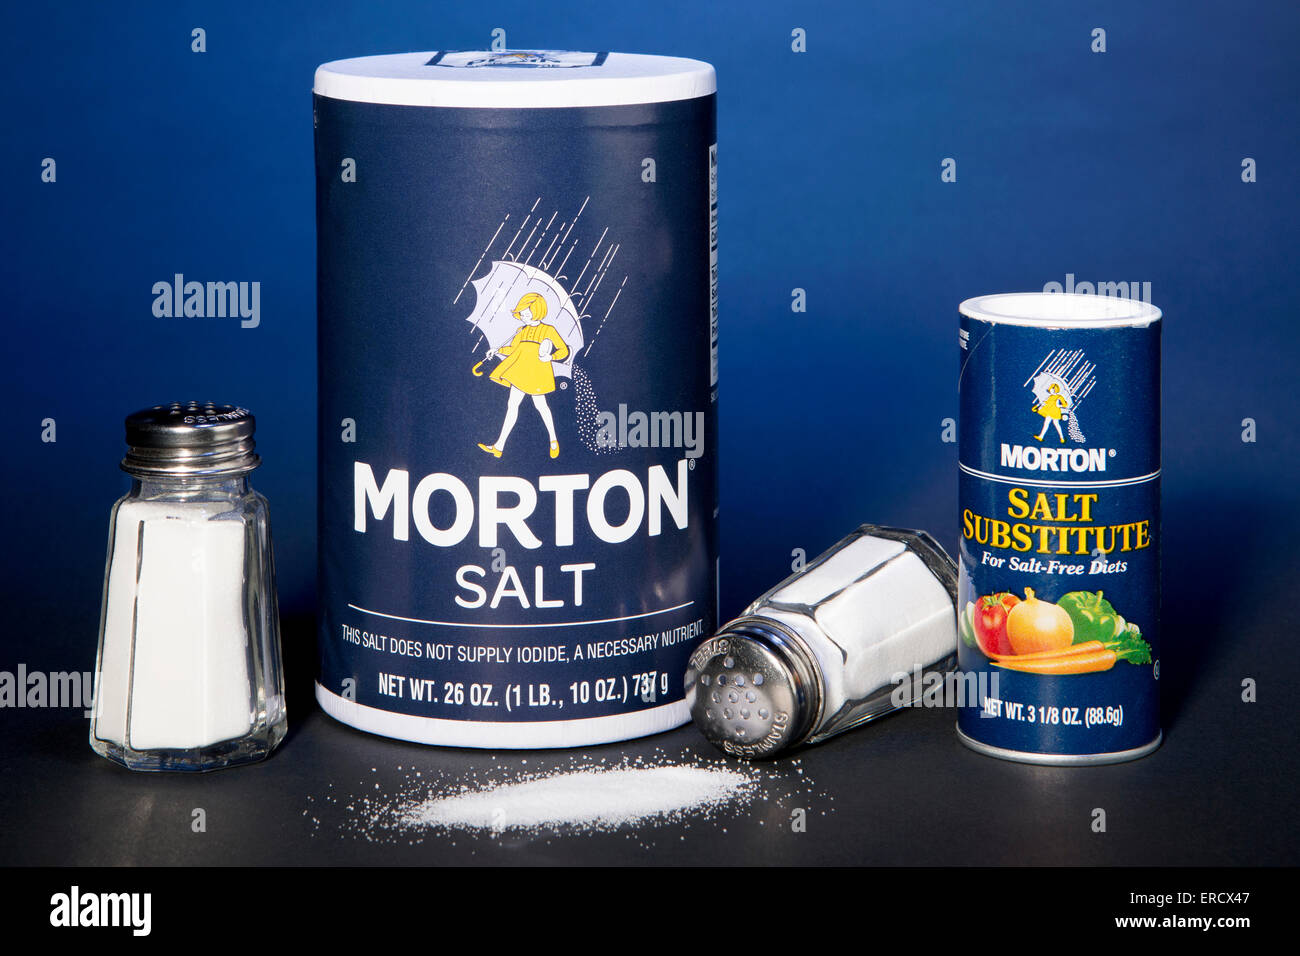 Morton réservoir de sel à côté d'un récipient de Morton substitut de sel (fait avec du chlorure de potassium) Banque D'Images